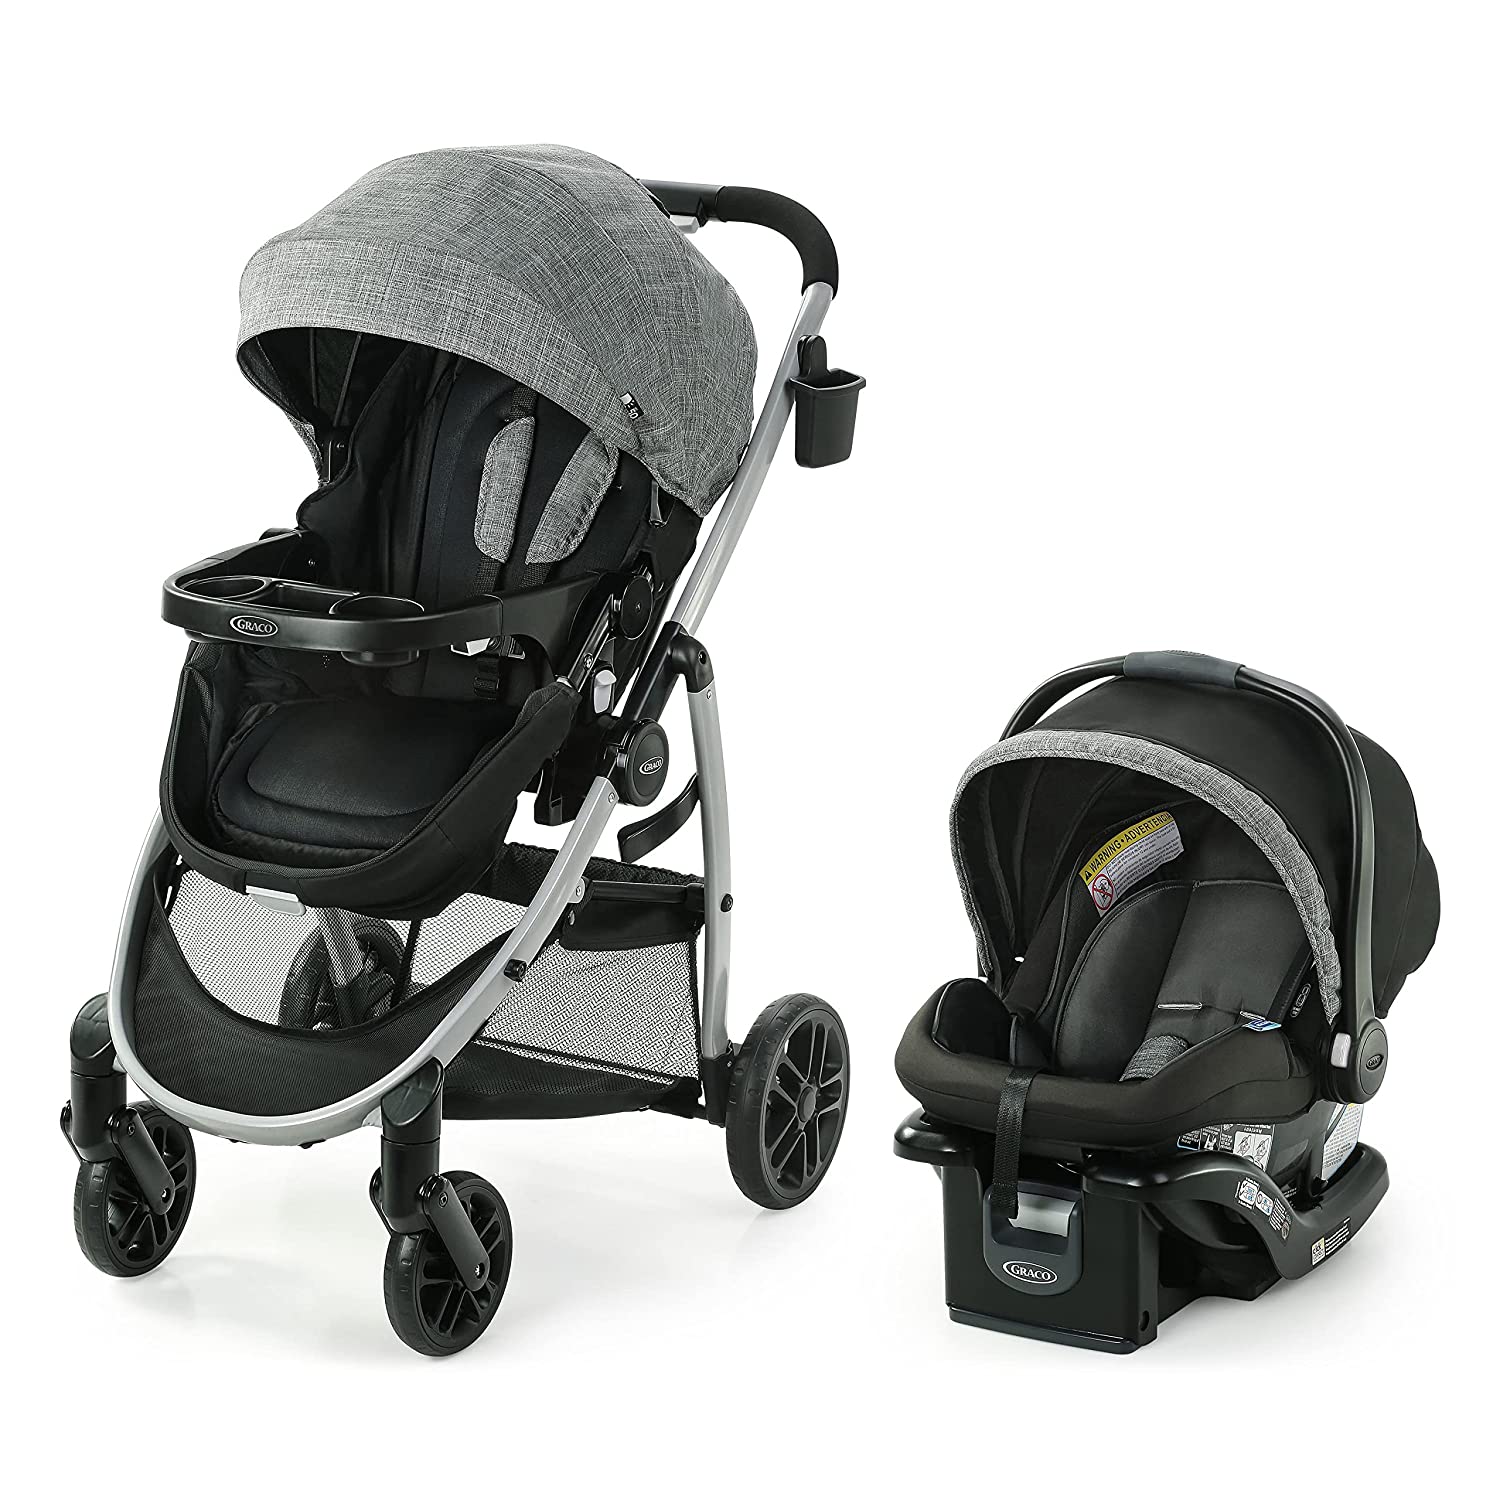 Детская коляска + автокресло Graco Modes Pramette, серый/чёрный маленькая тележка для детей детская коляска детская коляска коляска для младенцев детская коляска